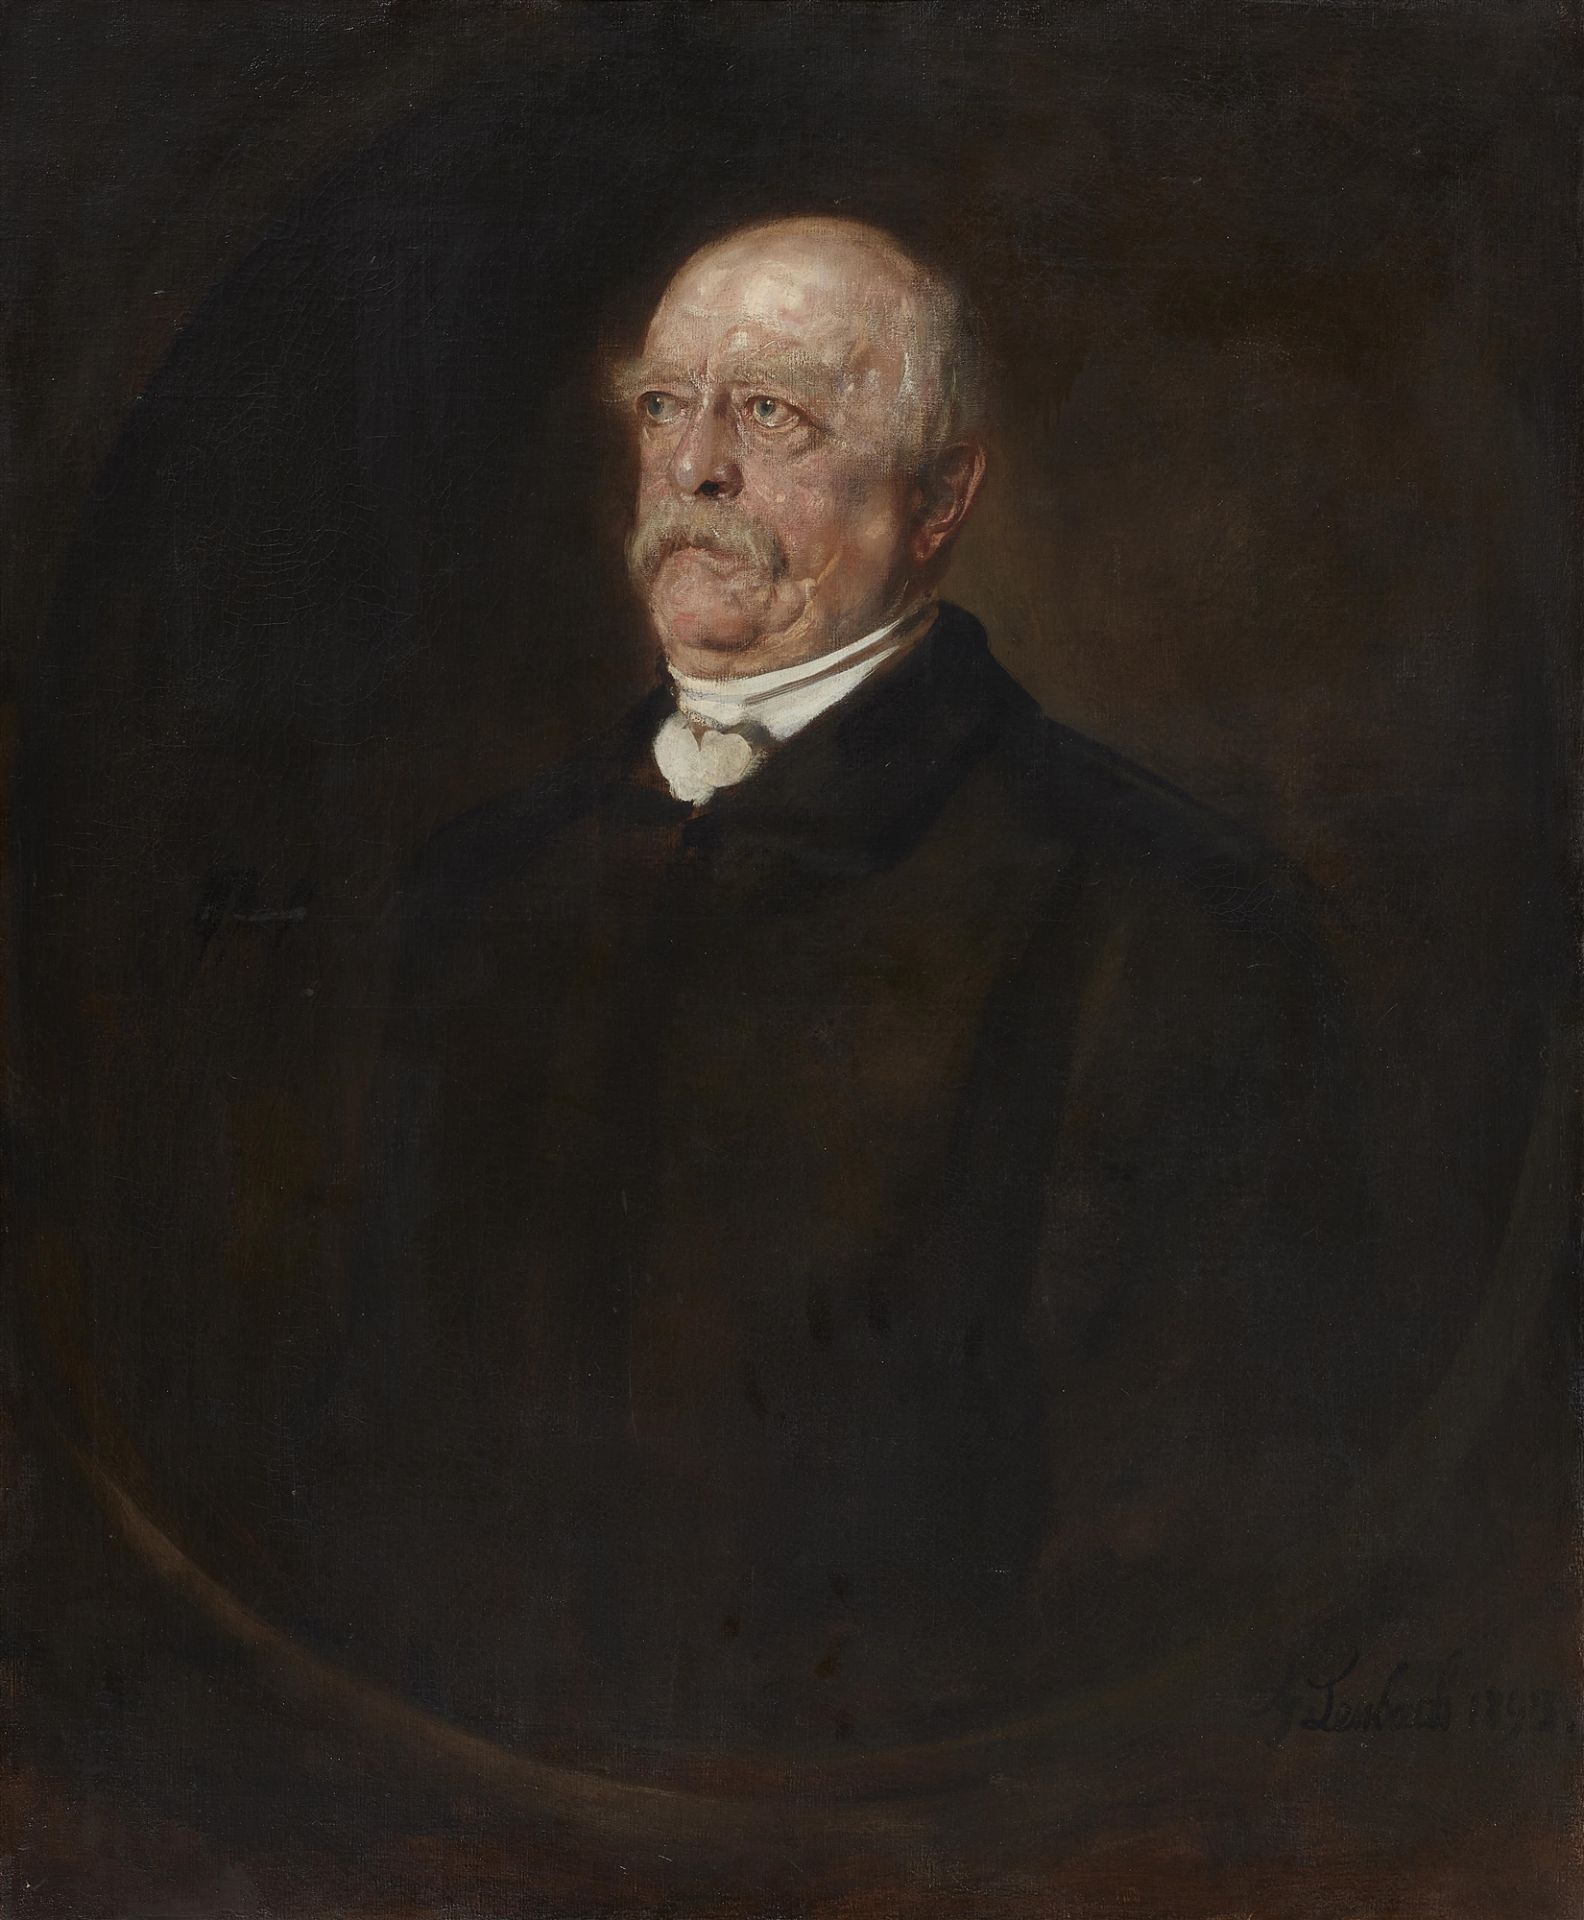 Franz Seraph von Lenbach, Porträt Otto von Bismarck im gemalten Oval